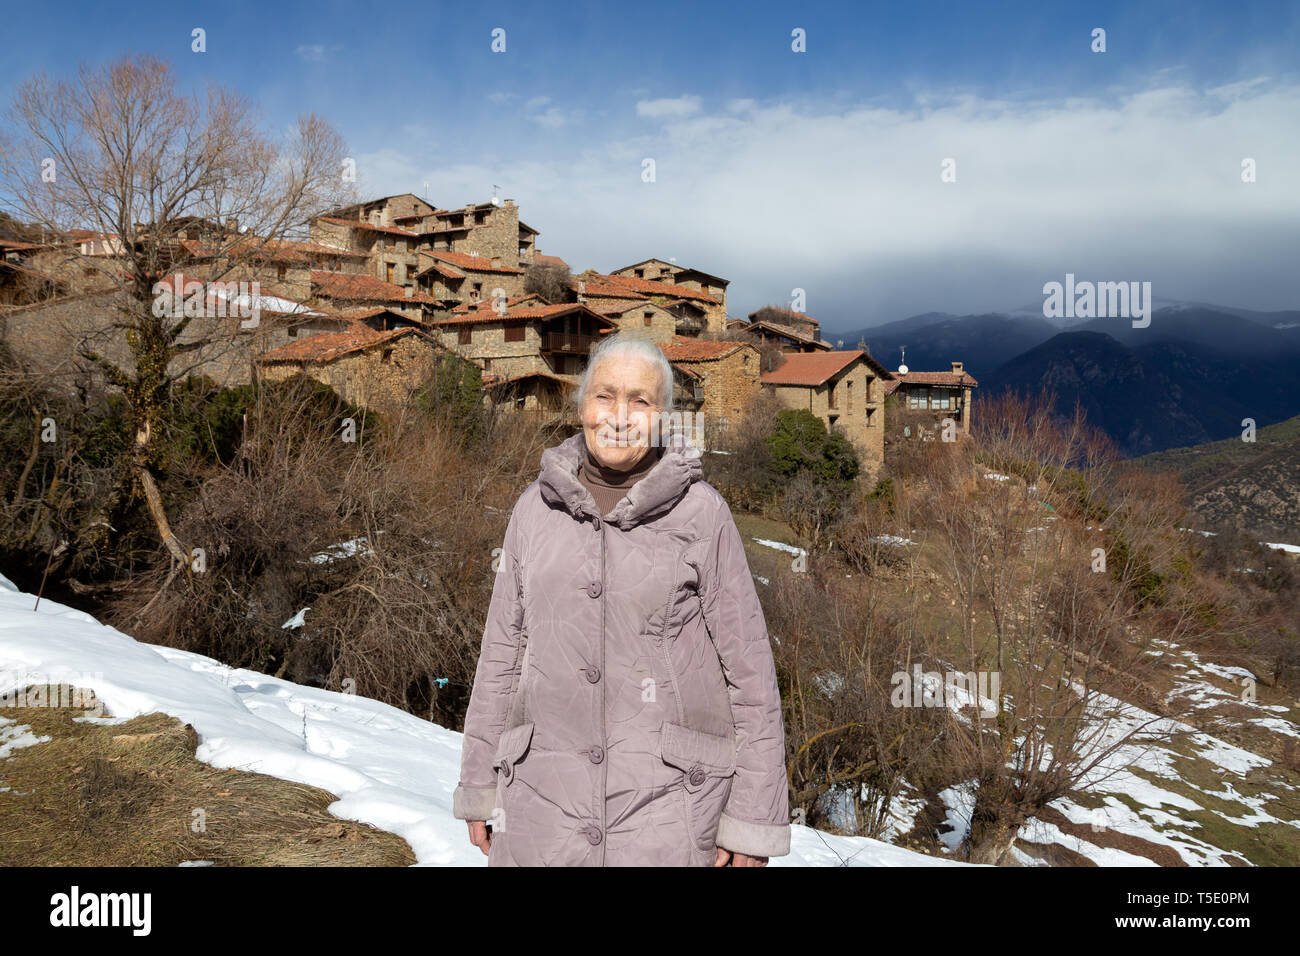 Una anciana mujer goza de un paisaje en un altiplano auténtico pueblo catalán con casas de piedra cuando caminaba por un sendero de montaña cubiertas de nieve que se derrite. Foto de stock